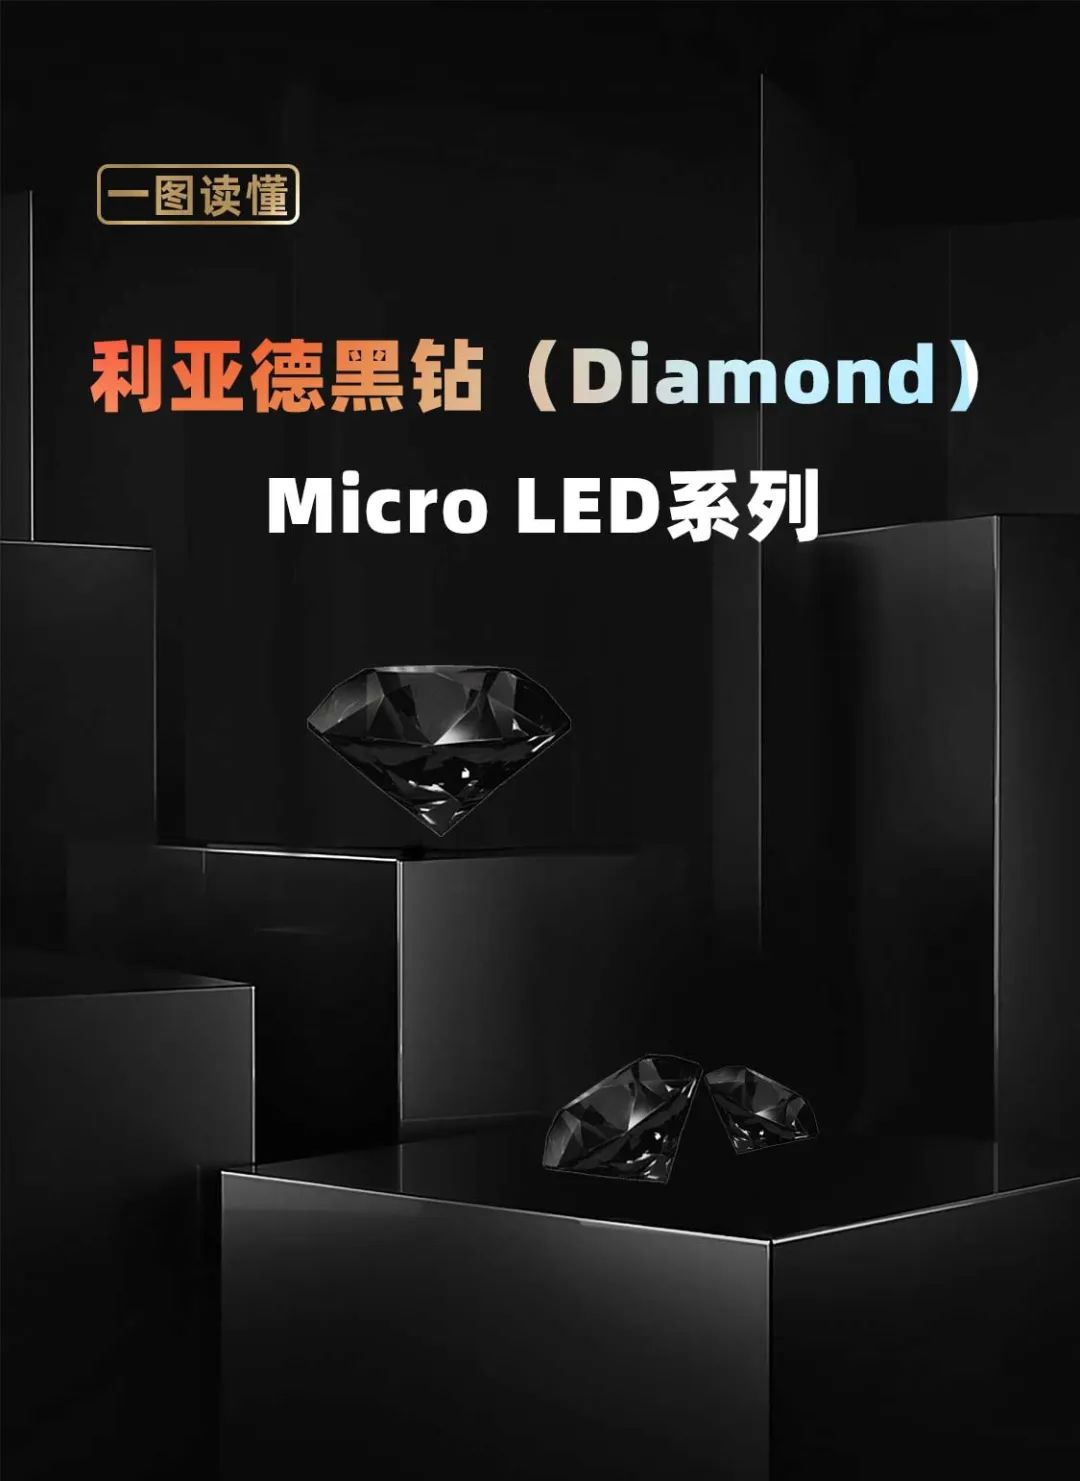 全网担保网面向全球发布第二代Micro LED显示技术——全网担保网黑钻（Diamond）系列